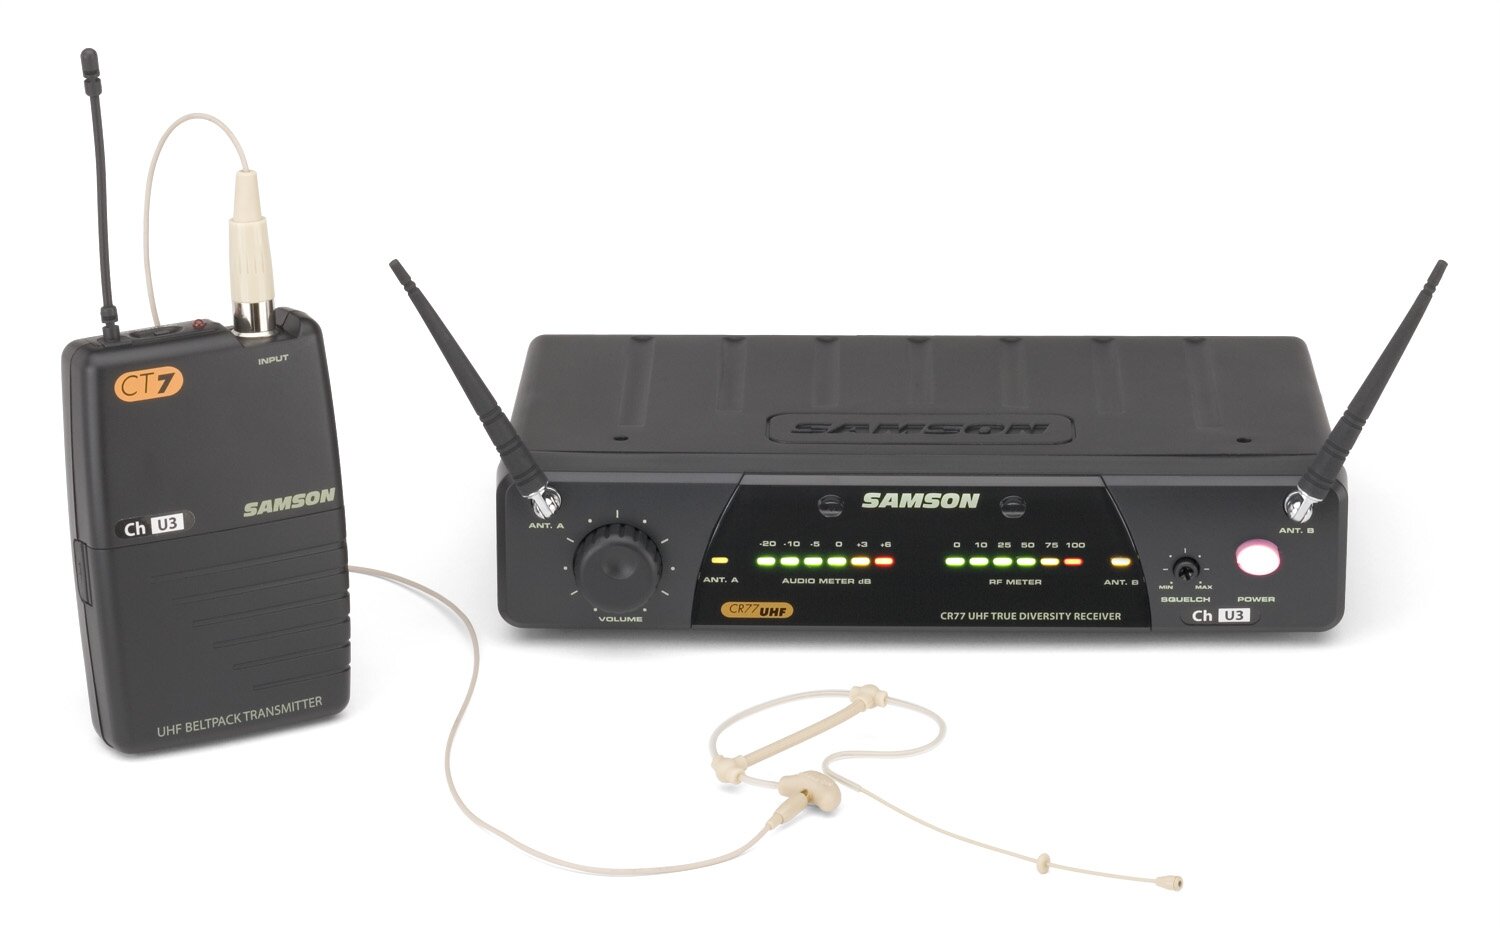 Samson Concert 77 SE10TX ch#E4 радиомикрофонная система с головным конденсаторным микрофоном SE10TX (цвет бежевый) канал E4, питание 9В/крона